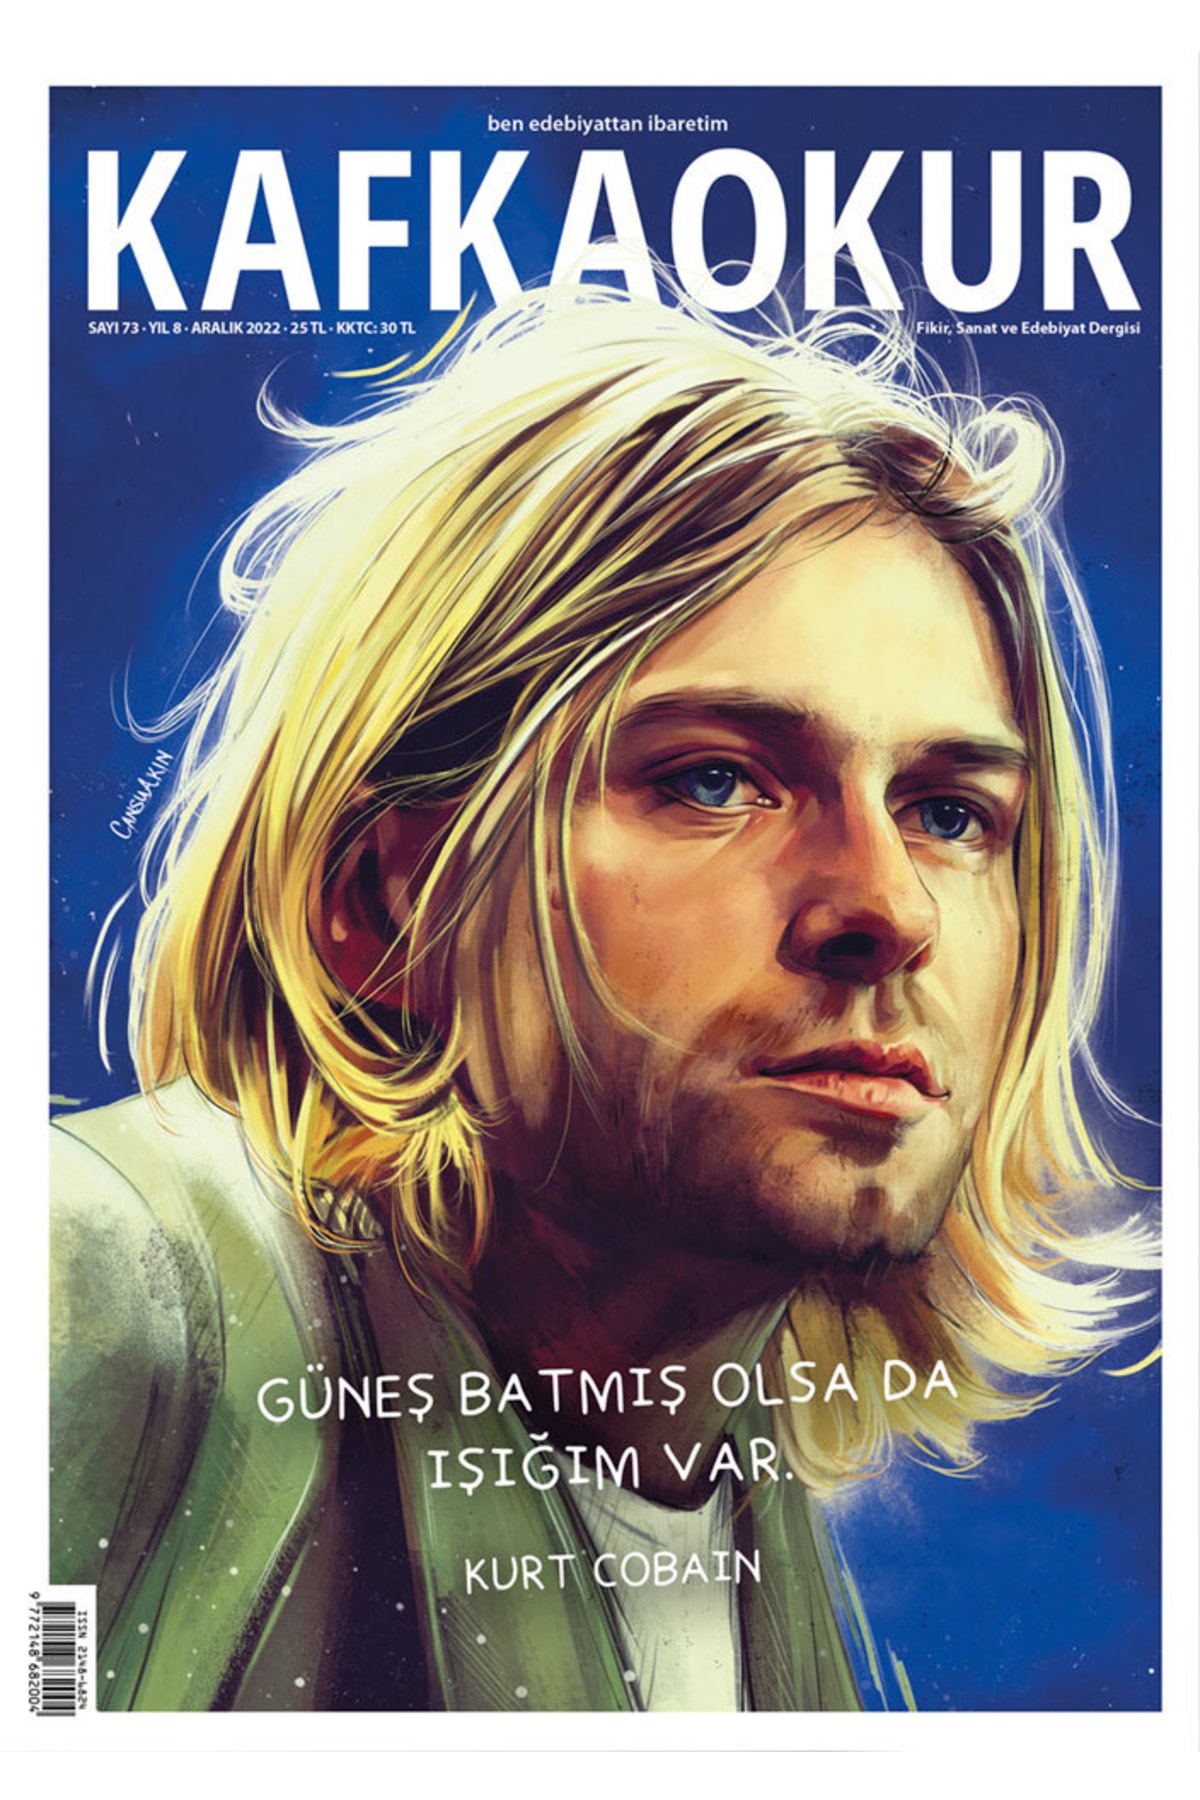 KafkaOkur Dergisi Kafkaokur Sayı 73 - Kurt Cobain - Aralık 2022